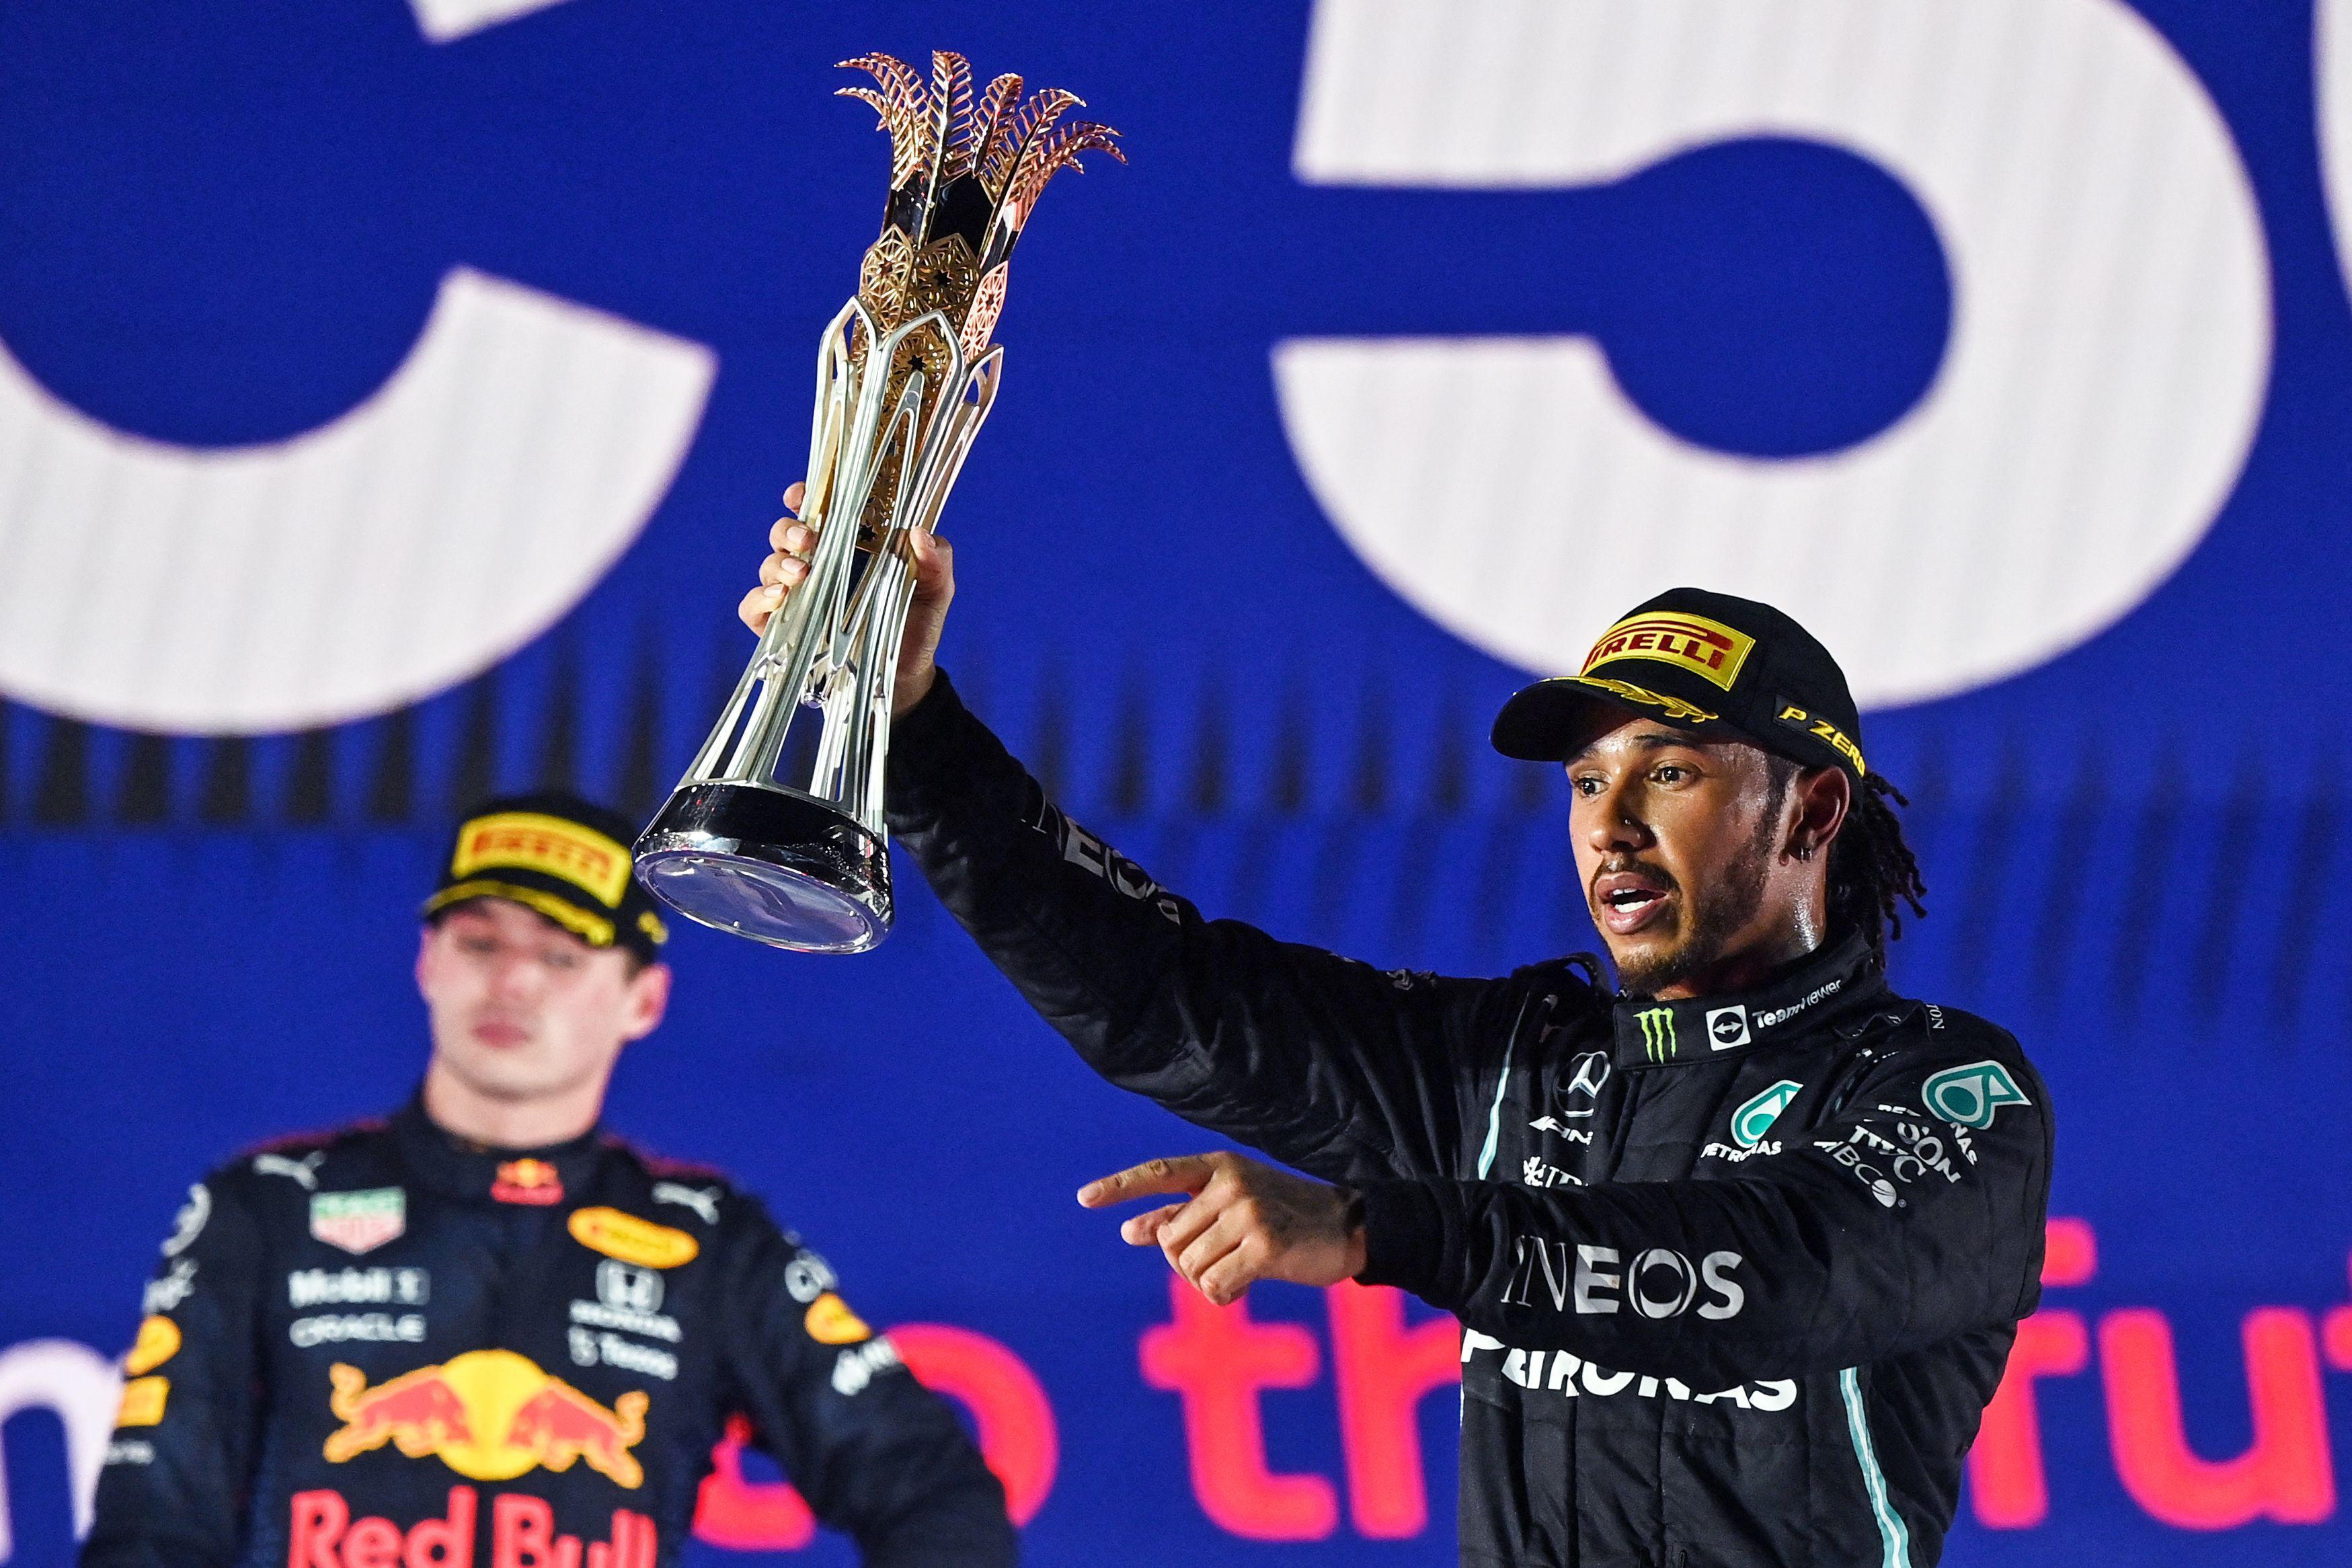 Olaylı Suudi Arabistan GPde zafer Lewis Hamiltonın